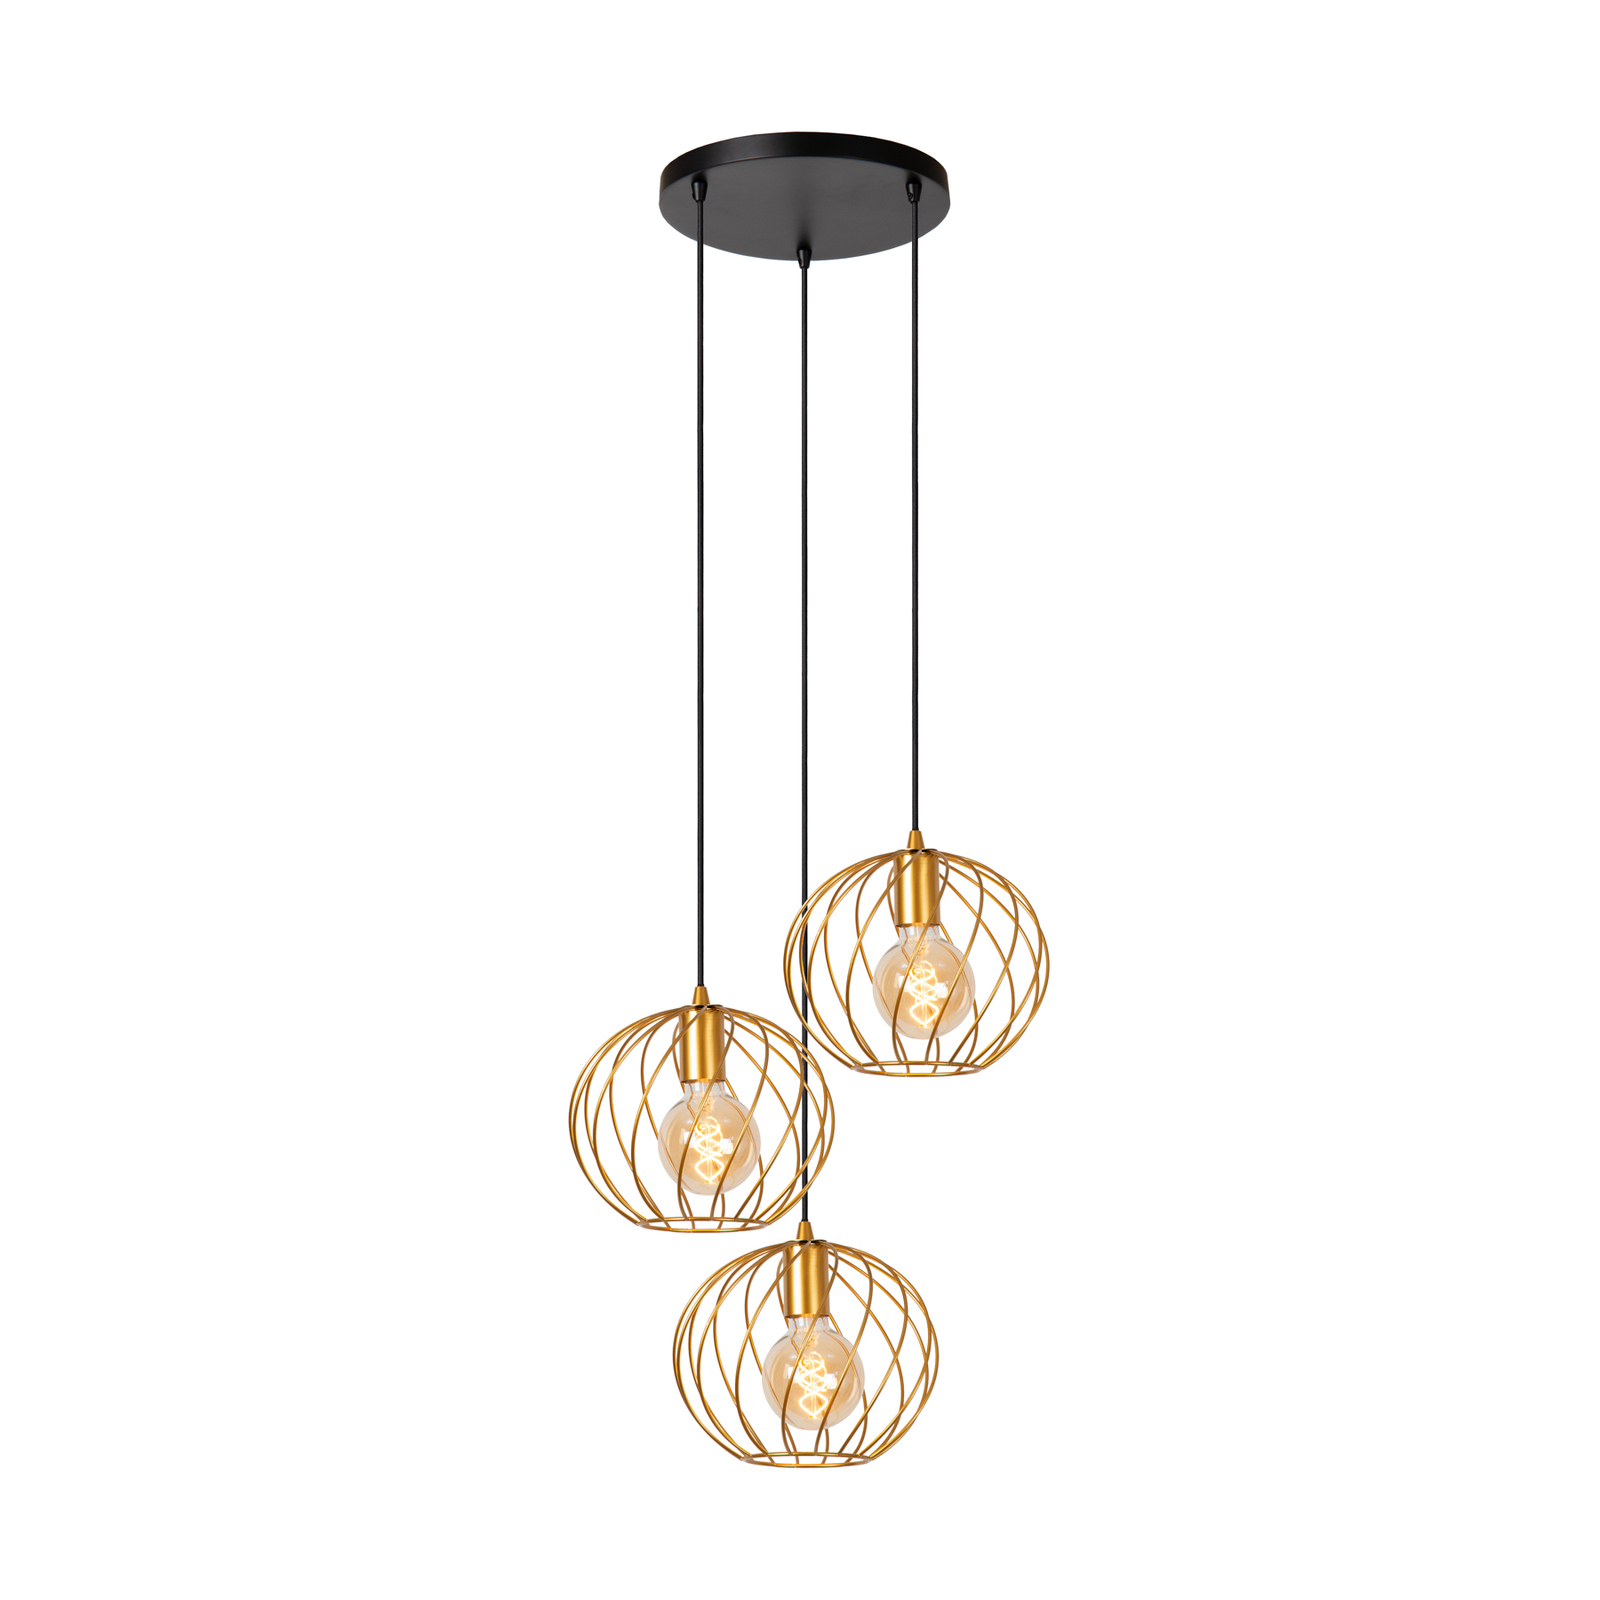 Danza pendant light, 3-bulb, round, gold